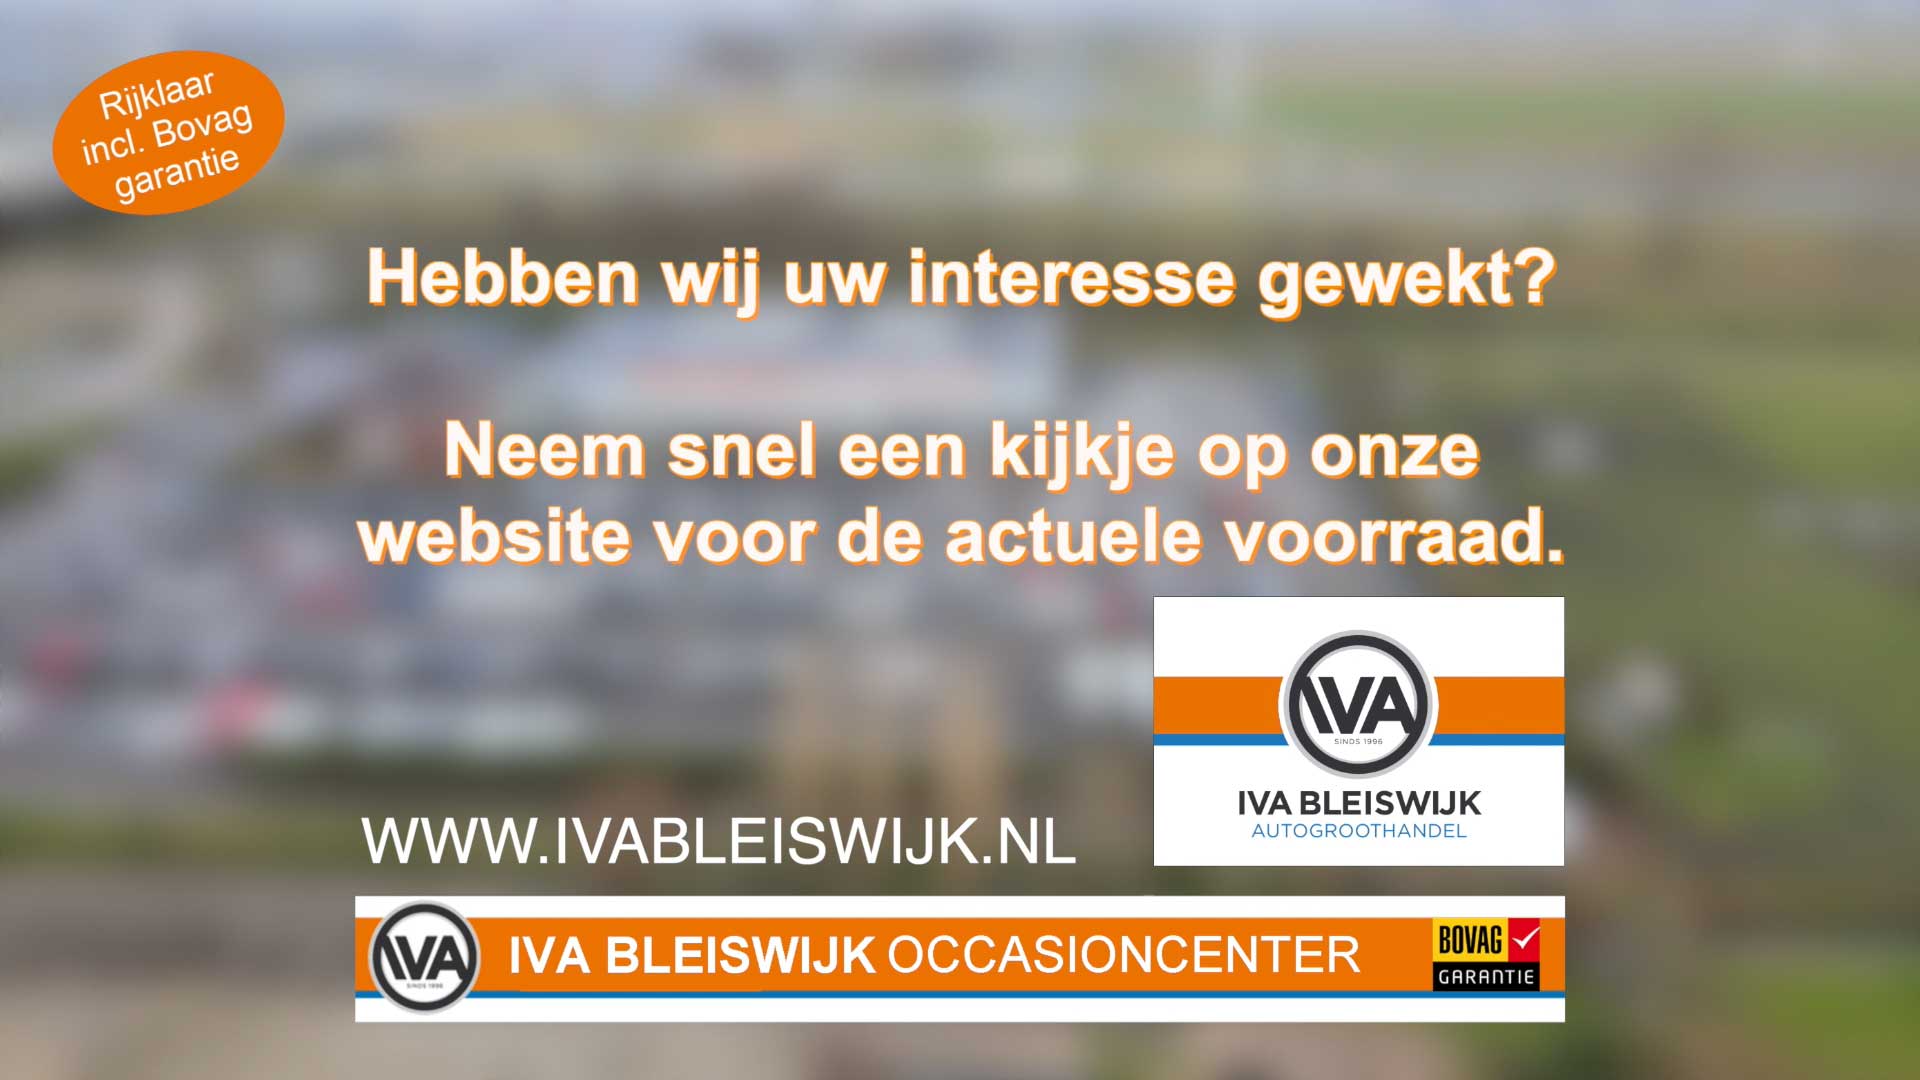 IVA Bleiswijk